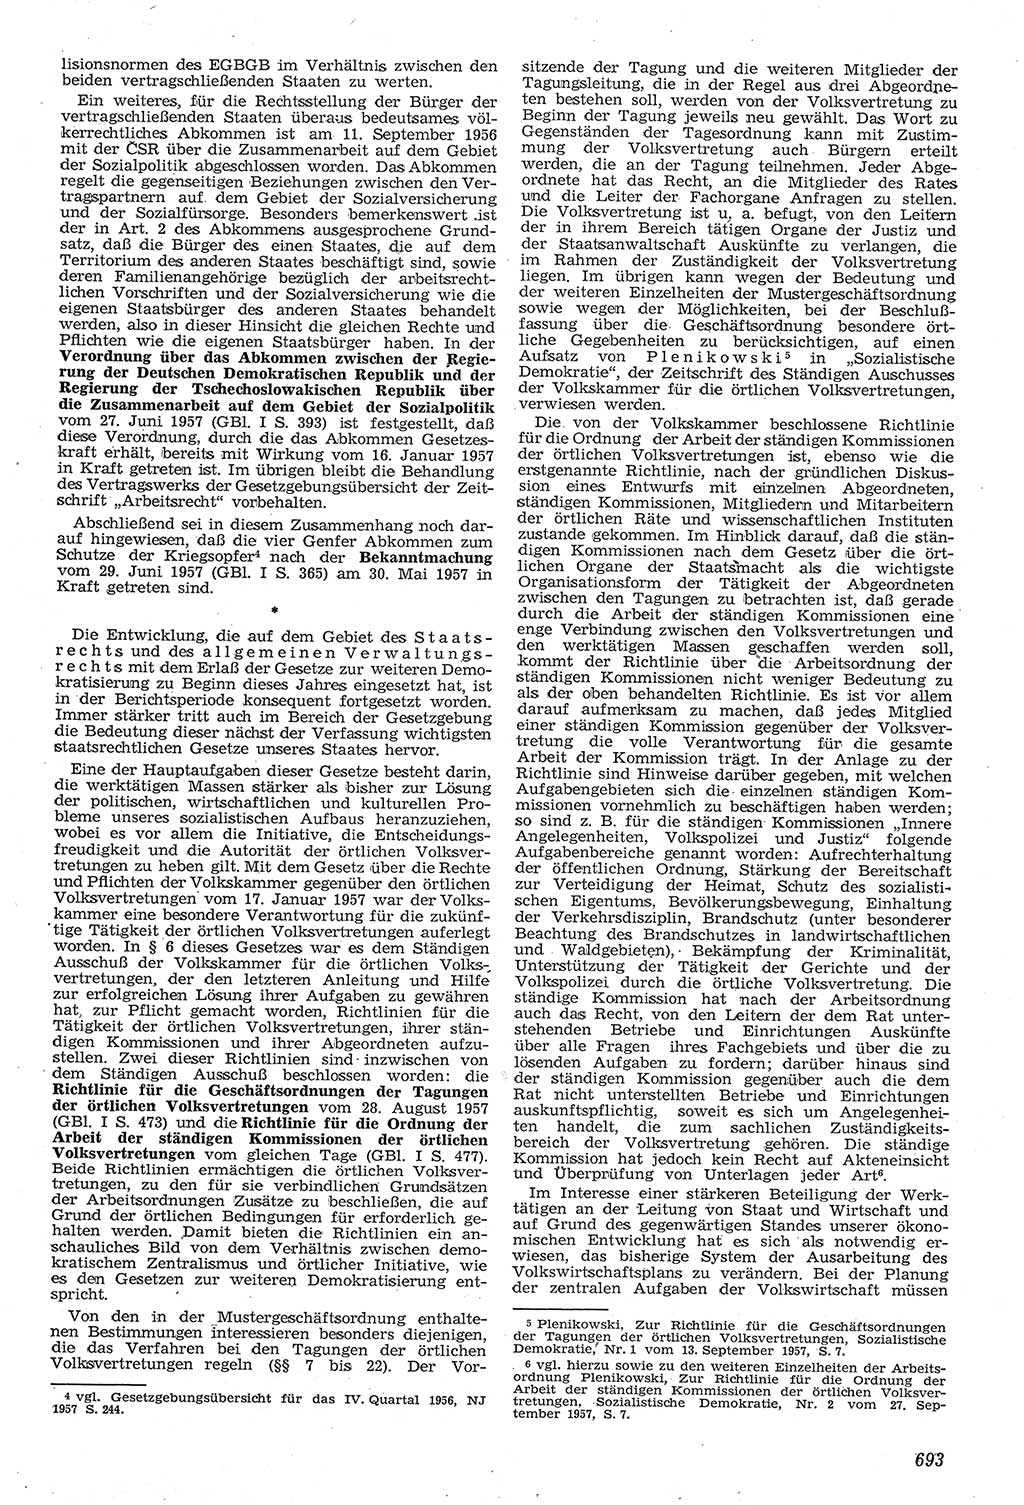 Neue Justiz (NJ), Zeitschrift für Recht und Rechtswissenschaft [Deutsche Demokratische Republik (DDR)], 11. Jahrgang 1957, Seite 693 (NJ DDR 1957, S. 693)